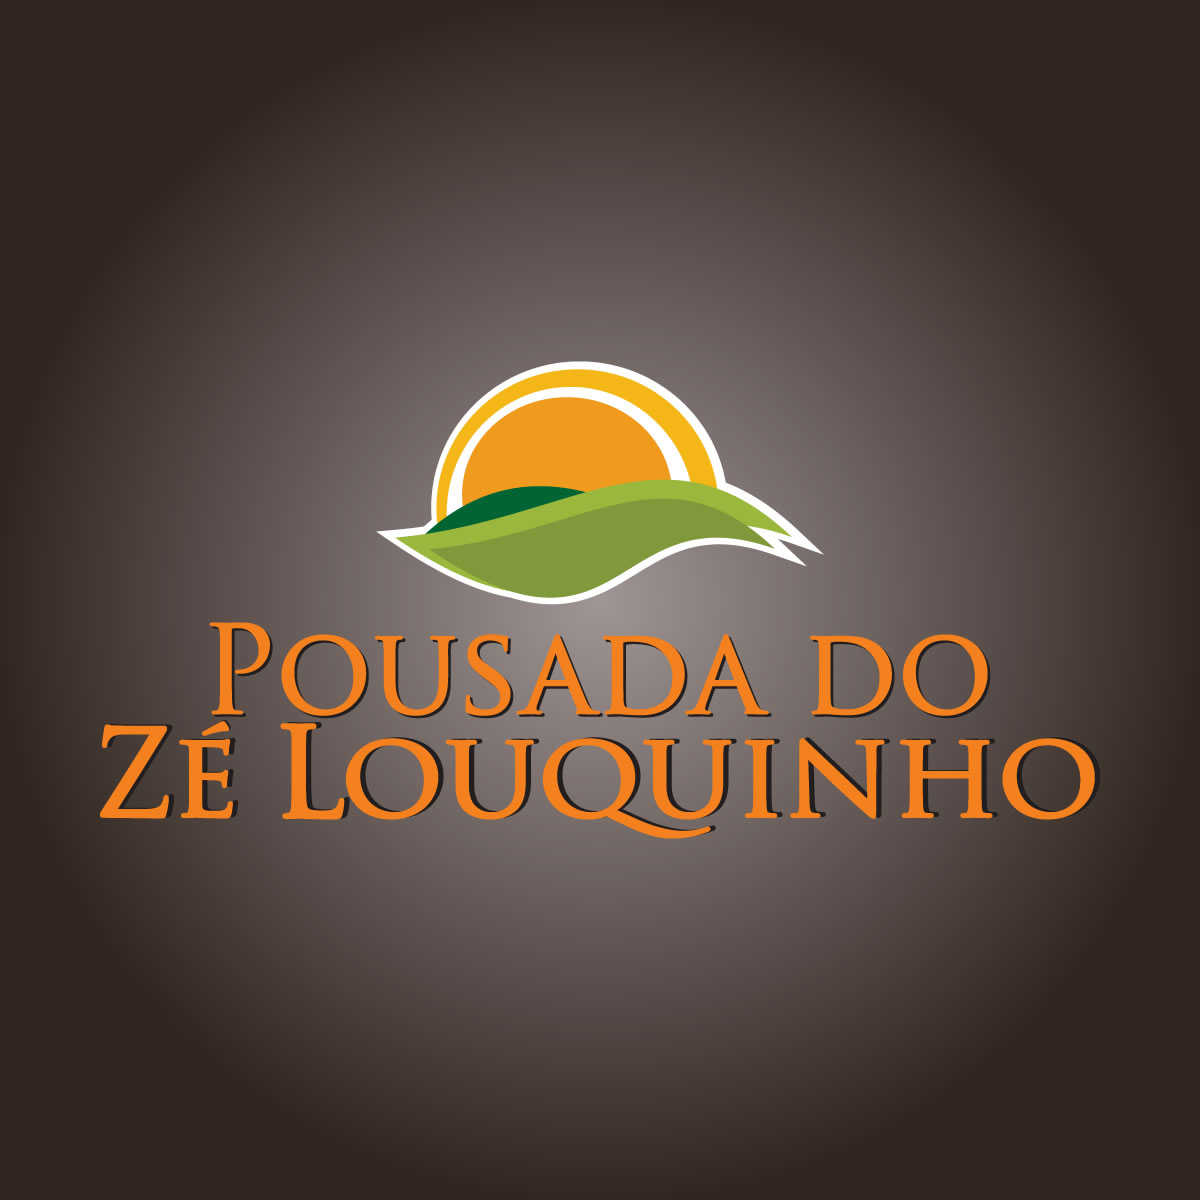 (c) Pousadadozelouquinho.com.br